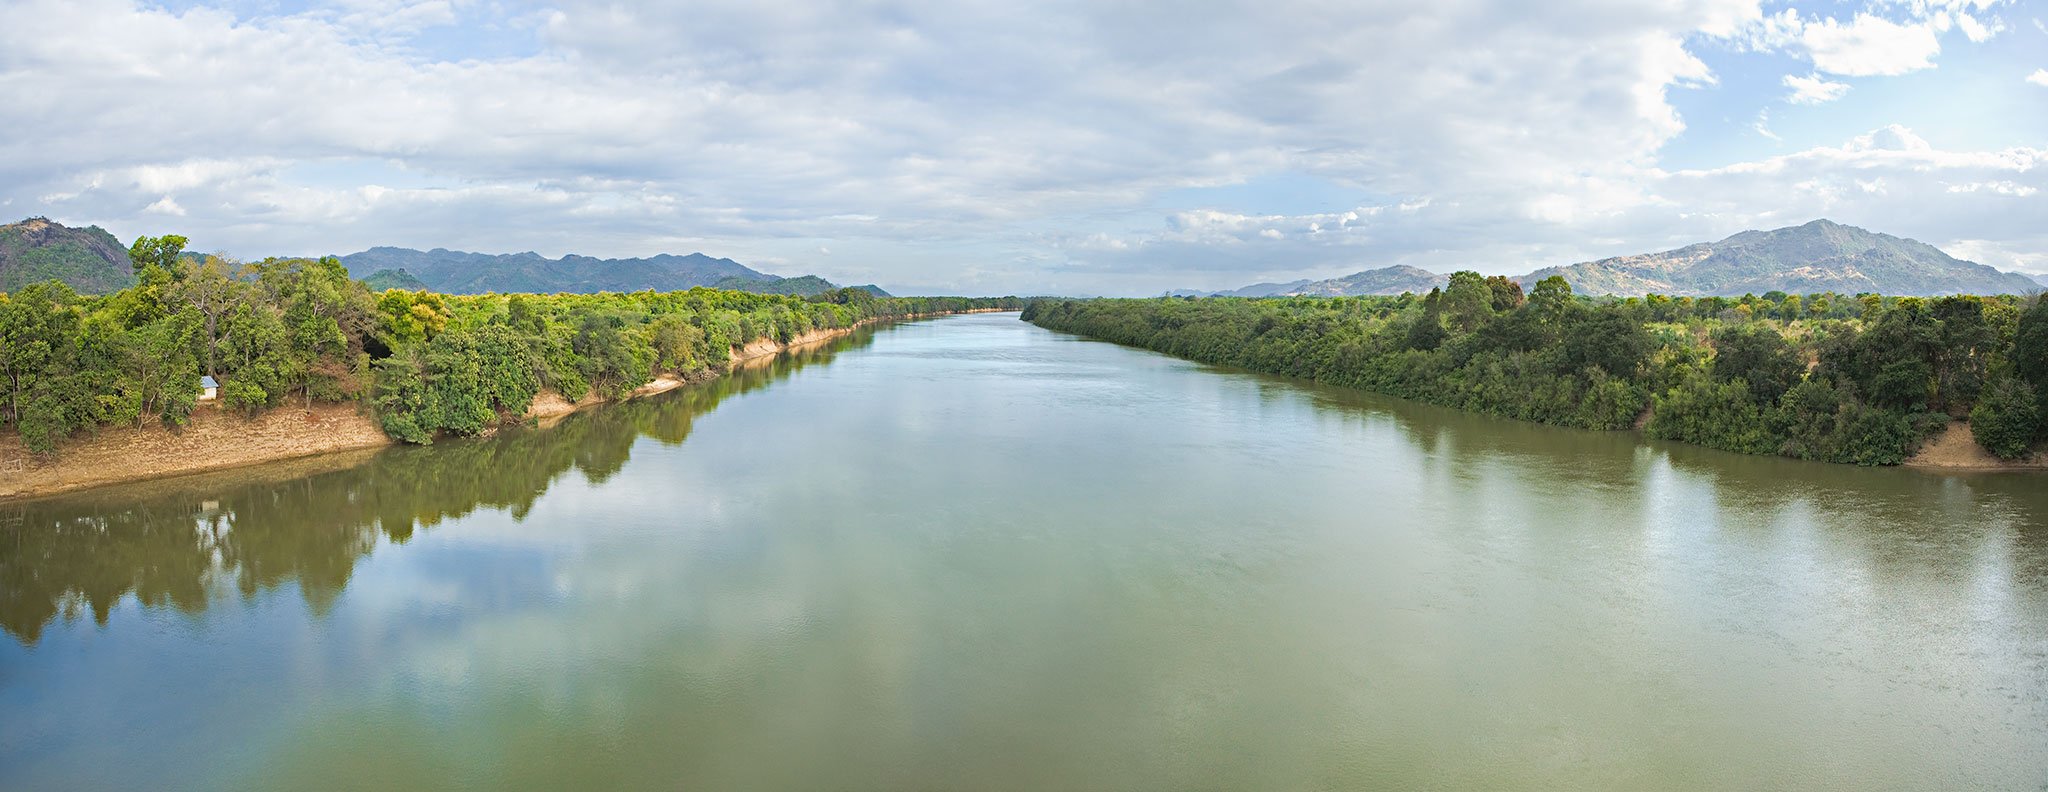 Caura river in Venezuela